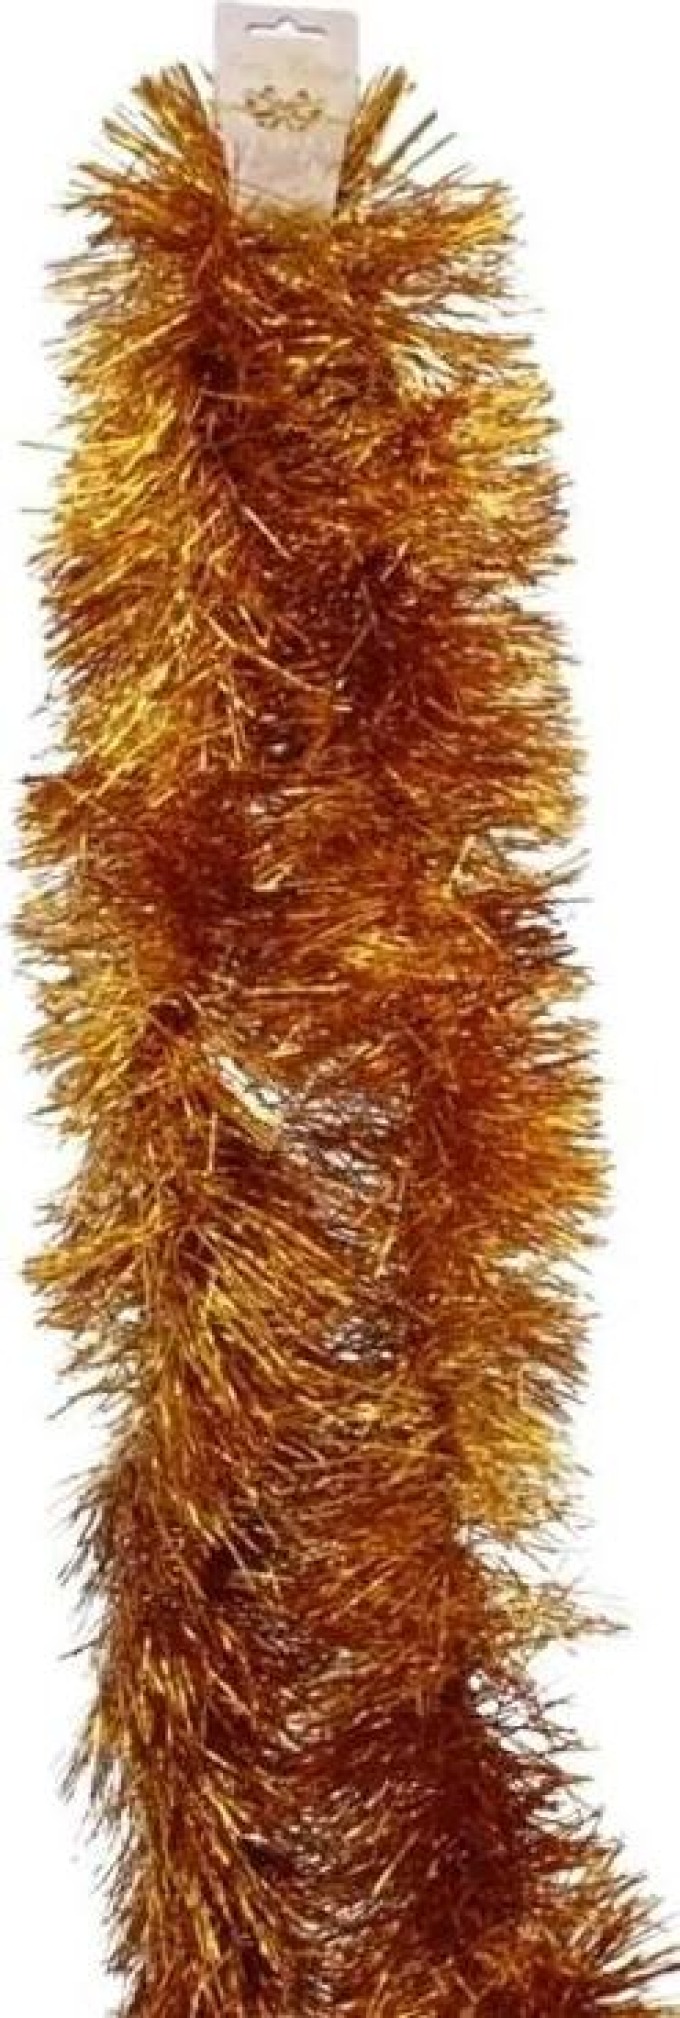 Vánoční girlanda hrubá 2m gold - Dekorativní ozdoba pro vánoční stromek a domov plná vánoční atmosféry